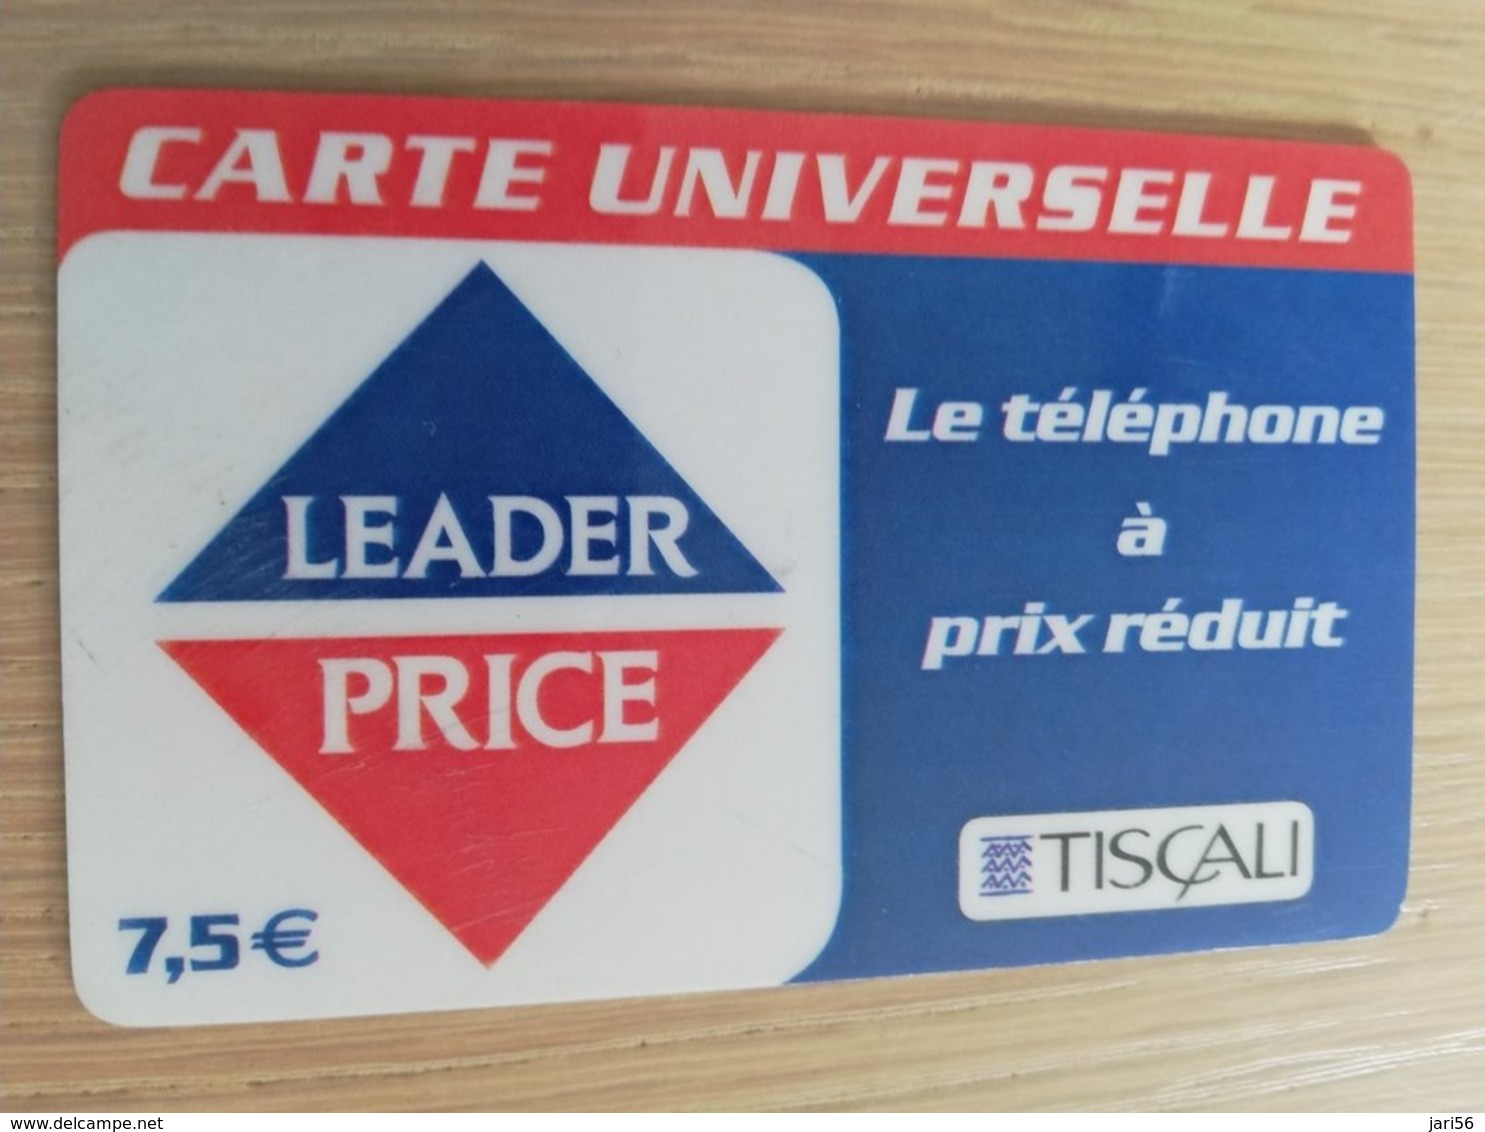 FRANCE/FRANKRIJK   TISCALI  7,5€     PREPAID  USED    ** 1494** - Mobicartes (GSM/SIM)